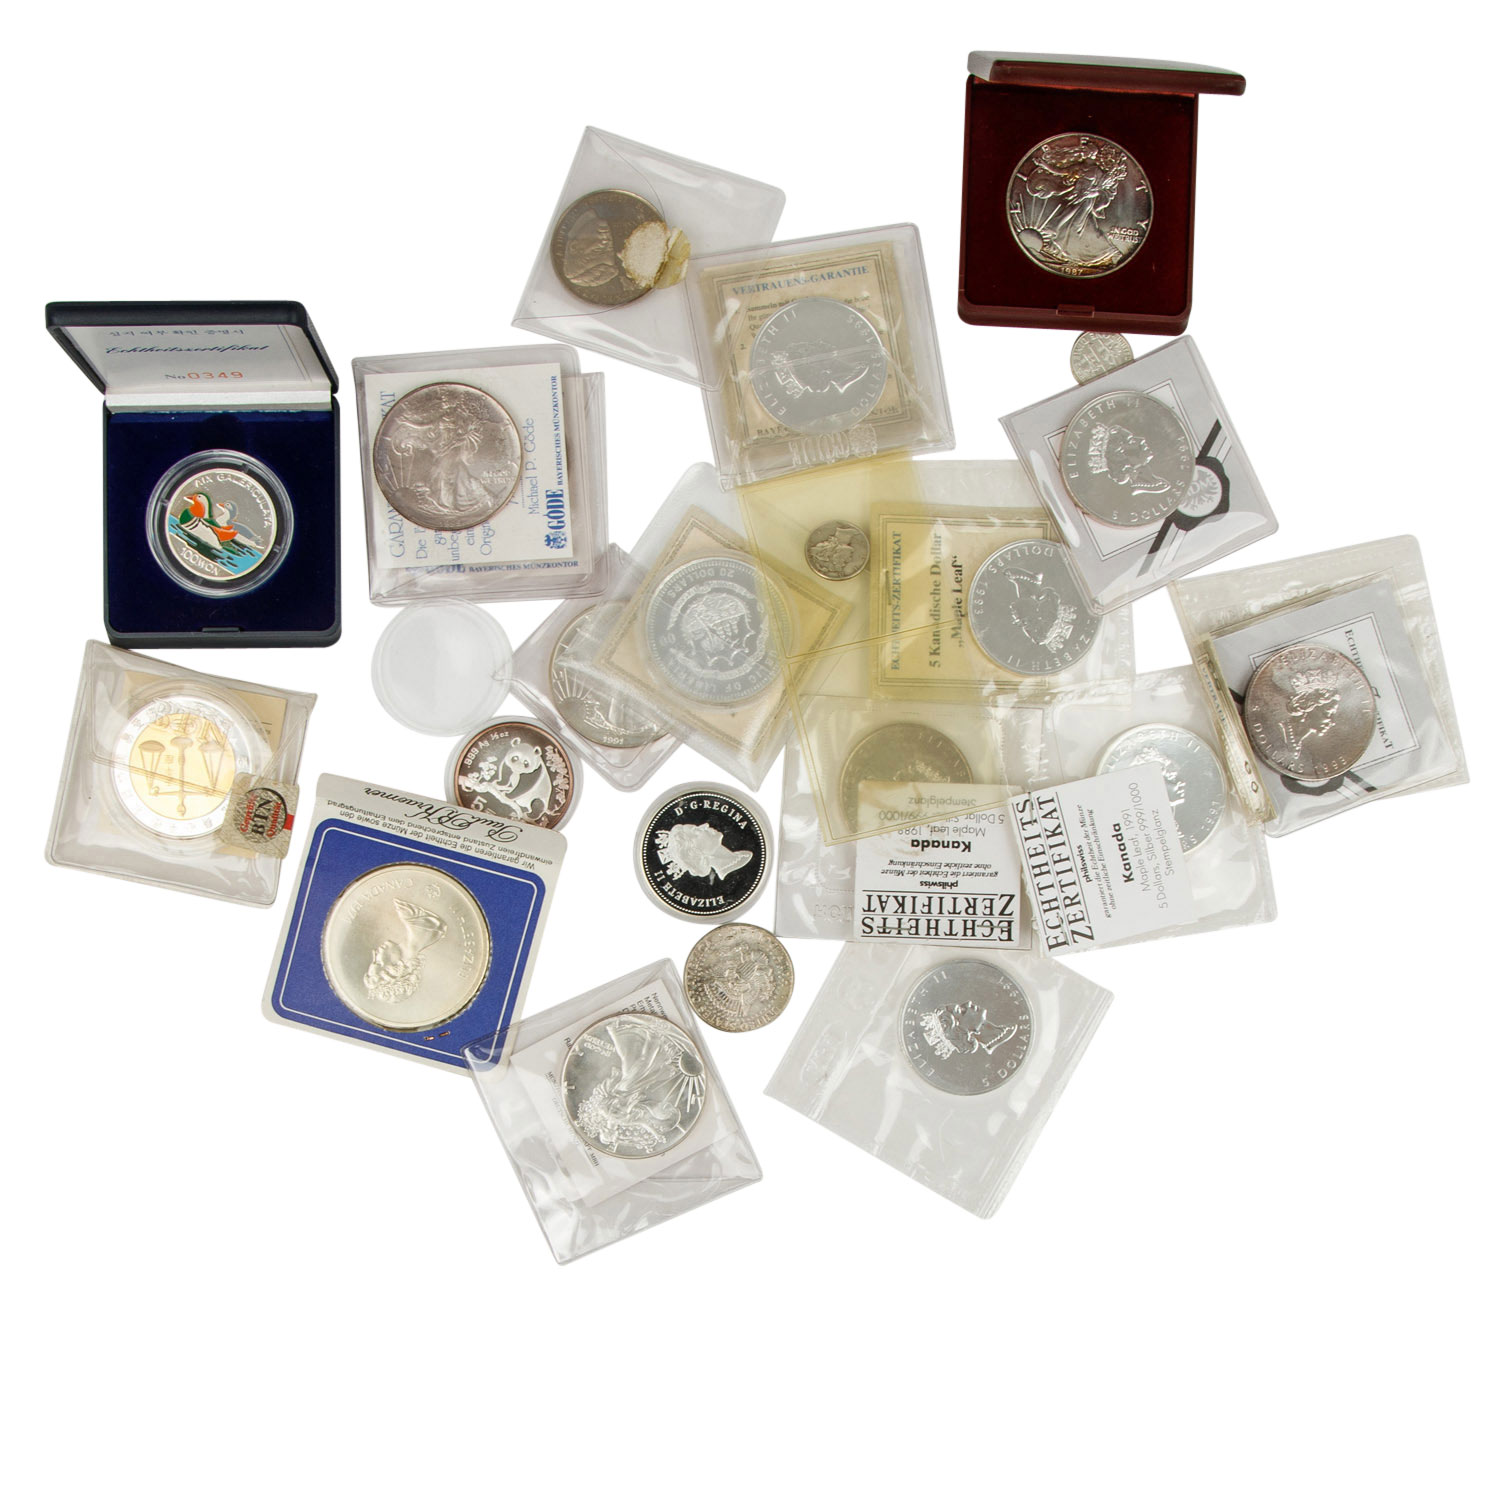 Gemischtes Gold- / Silber-Konvolut mit Münzen und Medaillen. - Image 4 of 4